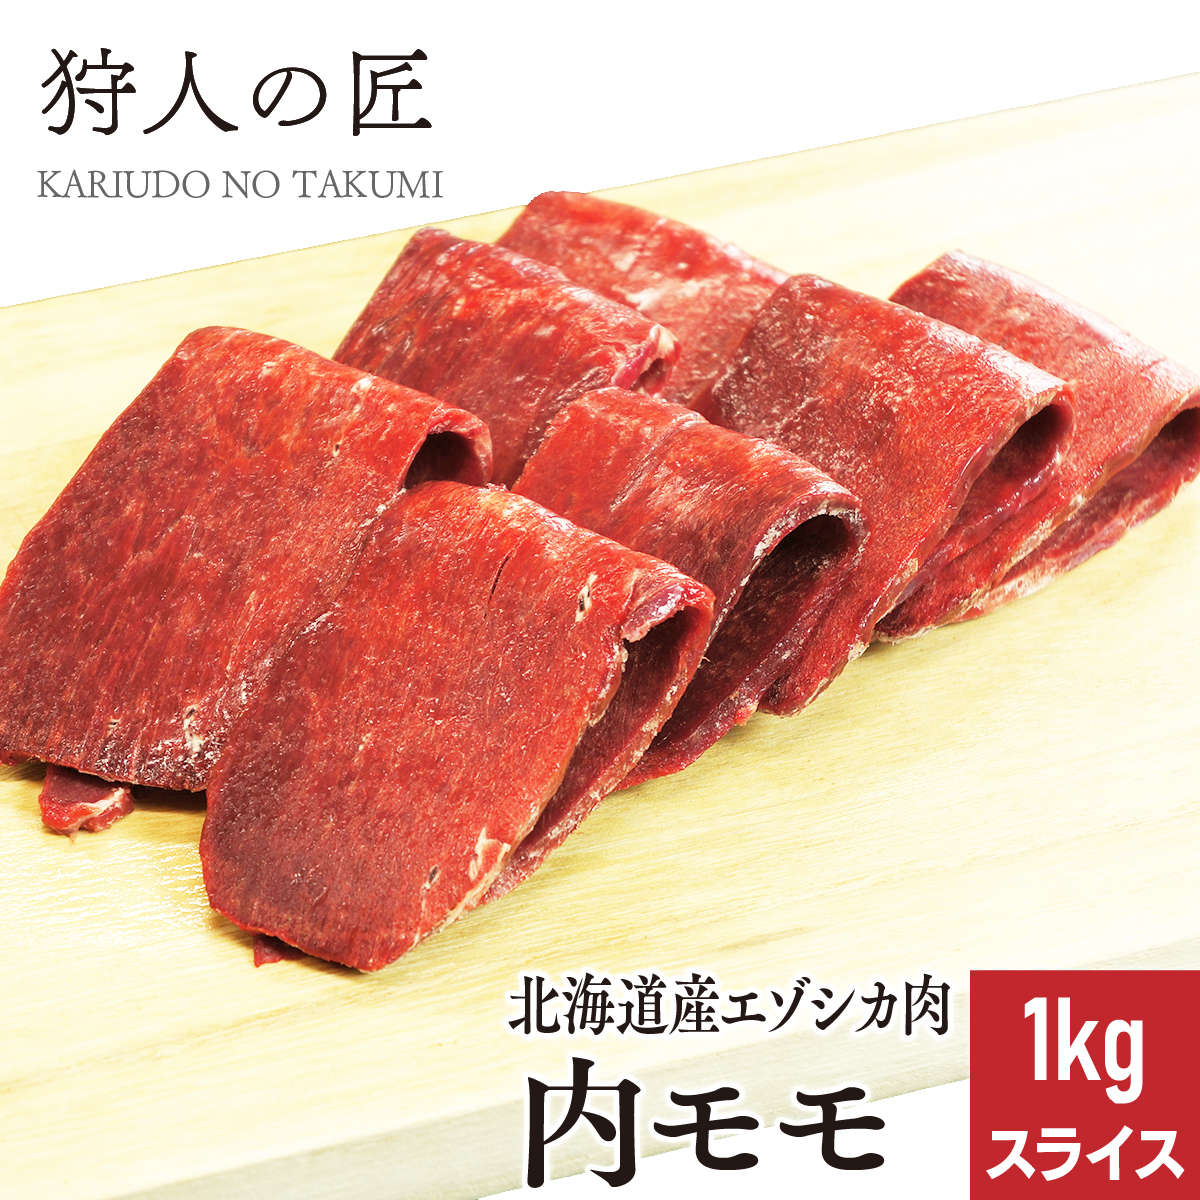 モモの中では1番柔らかく用途は様々 北海道稚内産 エゾ鹿肉 内モモ肉 １着でも送料無料 1kg スライス えぞしか肉 蝦夷鹿肉 無添加 ジビエ 引き出物 エゾシカ肉